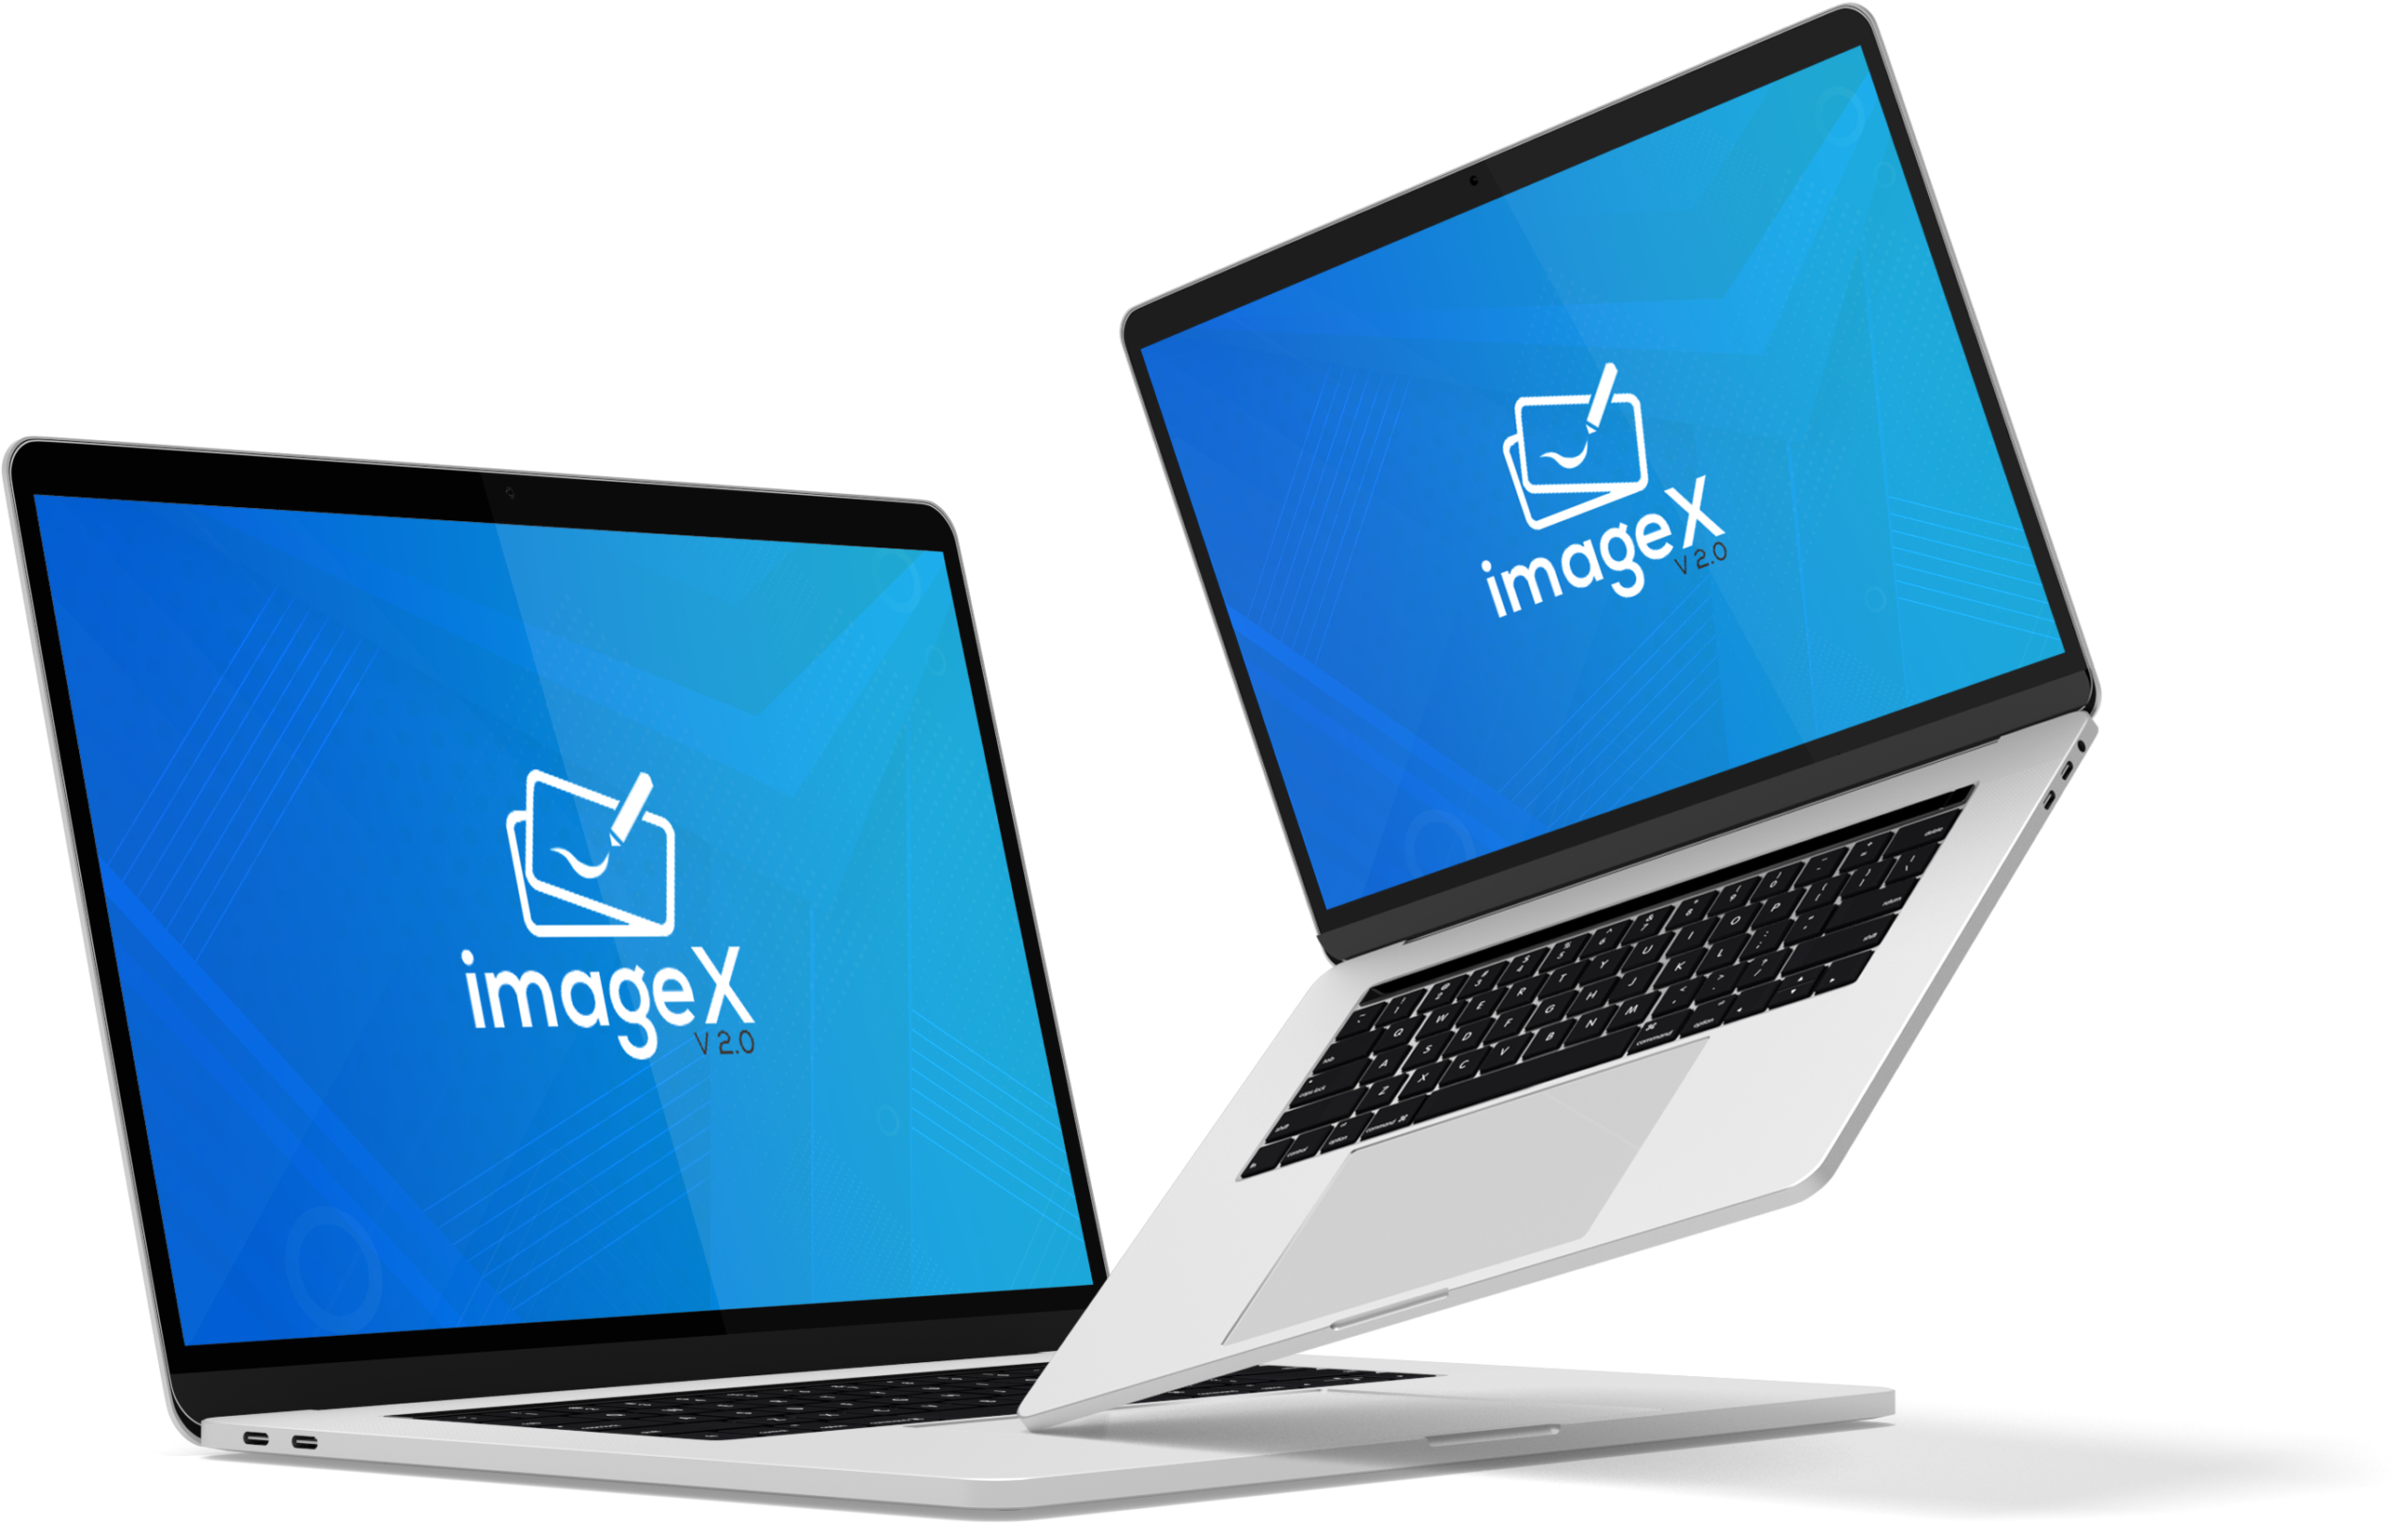 ImageX 2.0